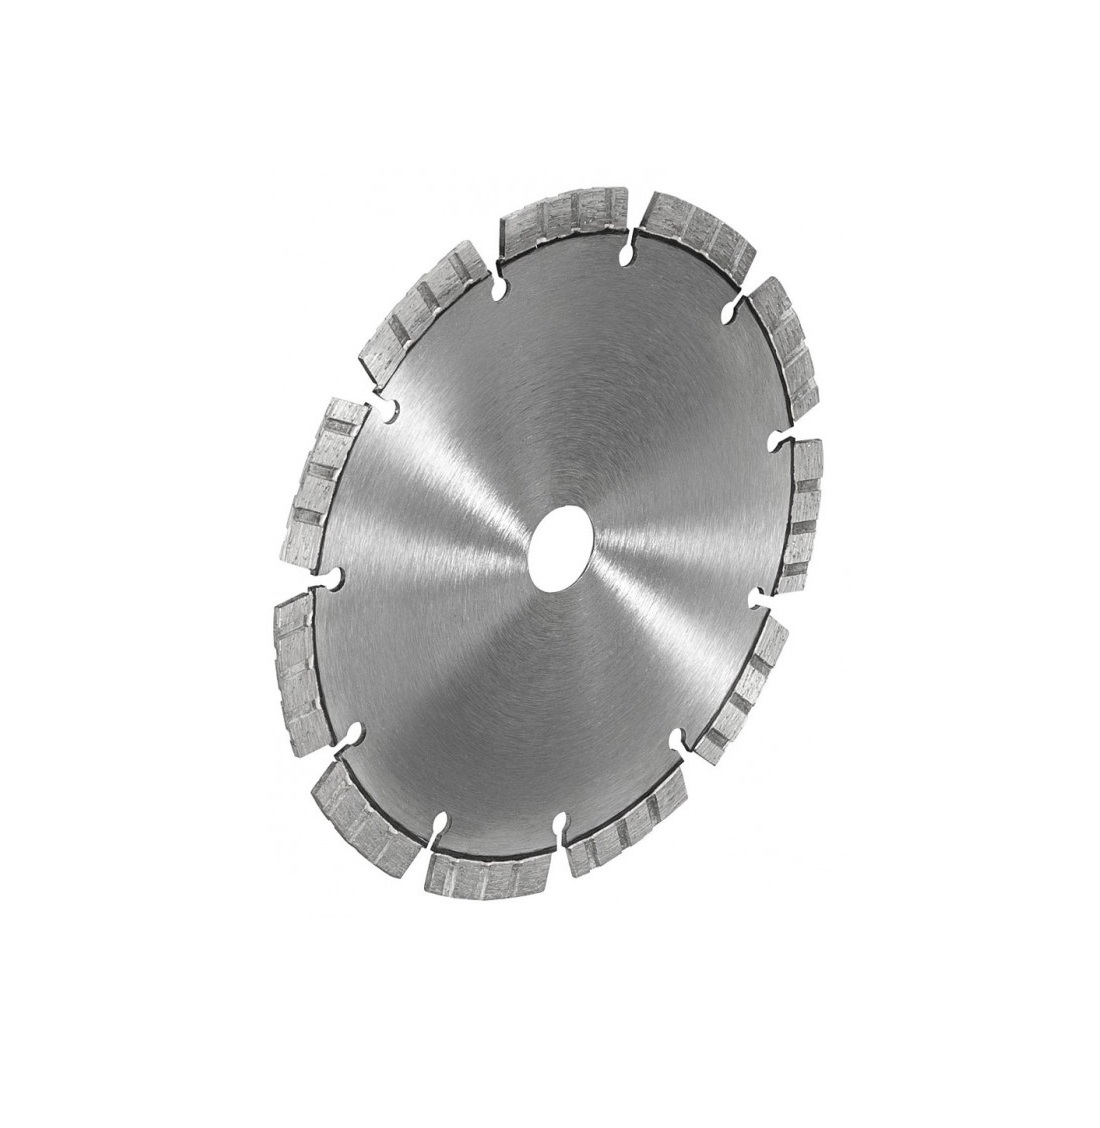 Алмазный отрезной диск Rems LS-Turbo 180 – универсальный алмазный отрезной диск диаметром 180 мм. Устойчивый к воздействию высоких температур, для быстрого резания и резания твердых материалов, с металлической основой по EN 13236, лазерная сварка.